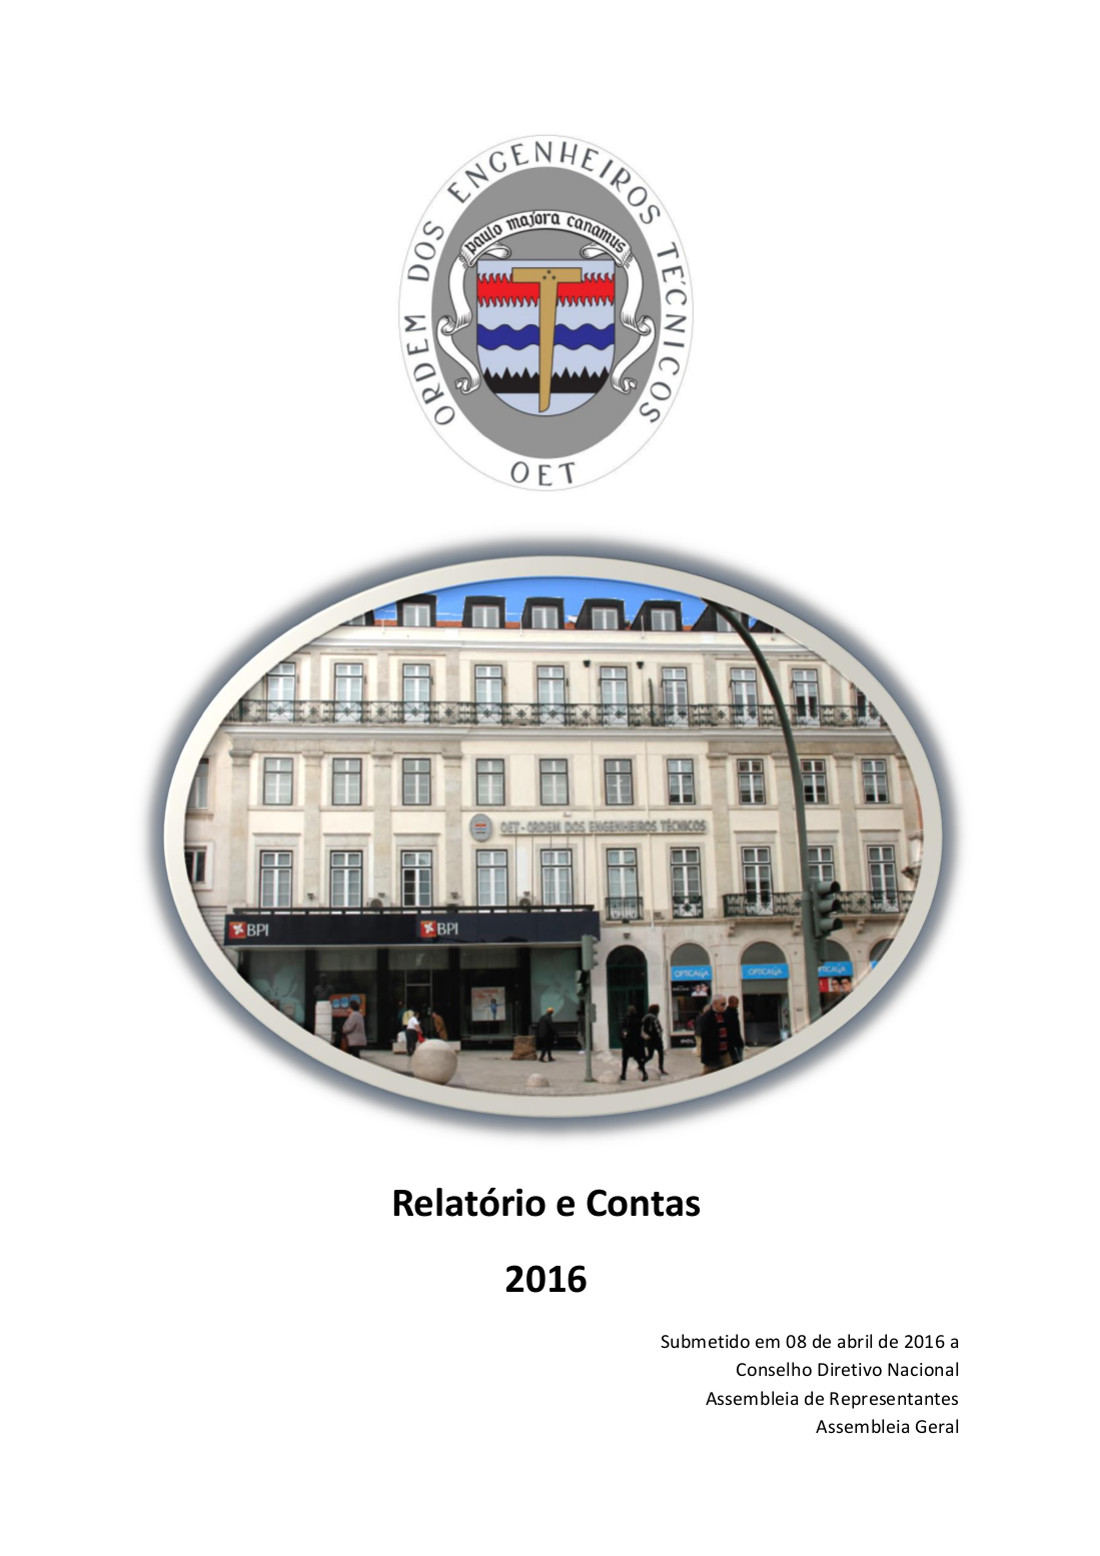 Relatório e Contas de 2016 aprovado